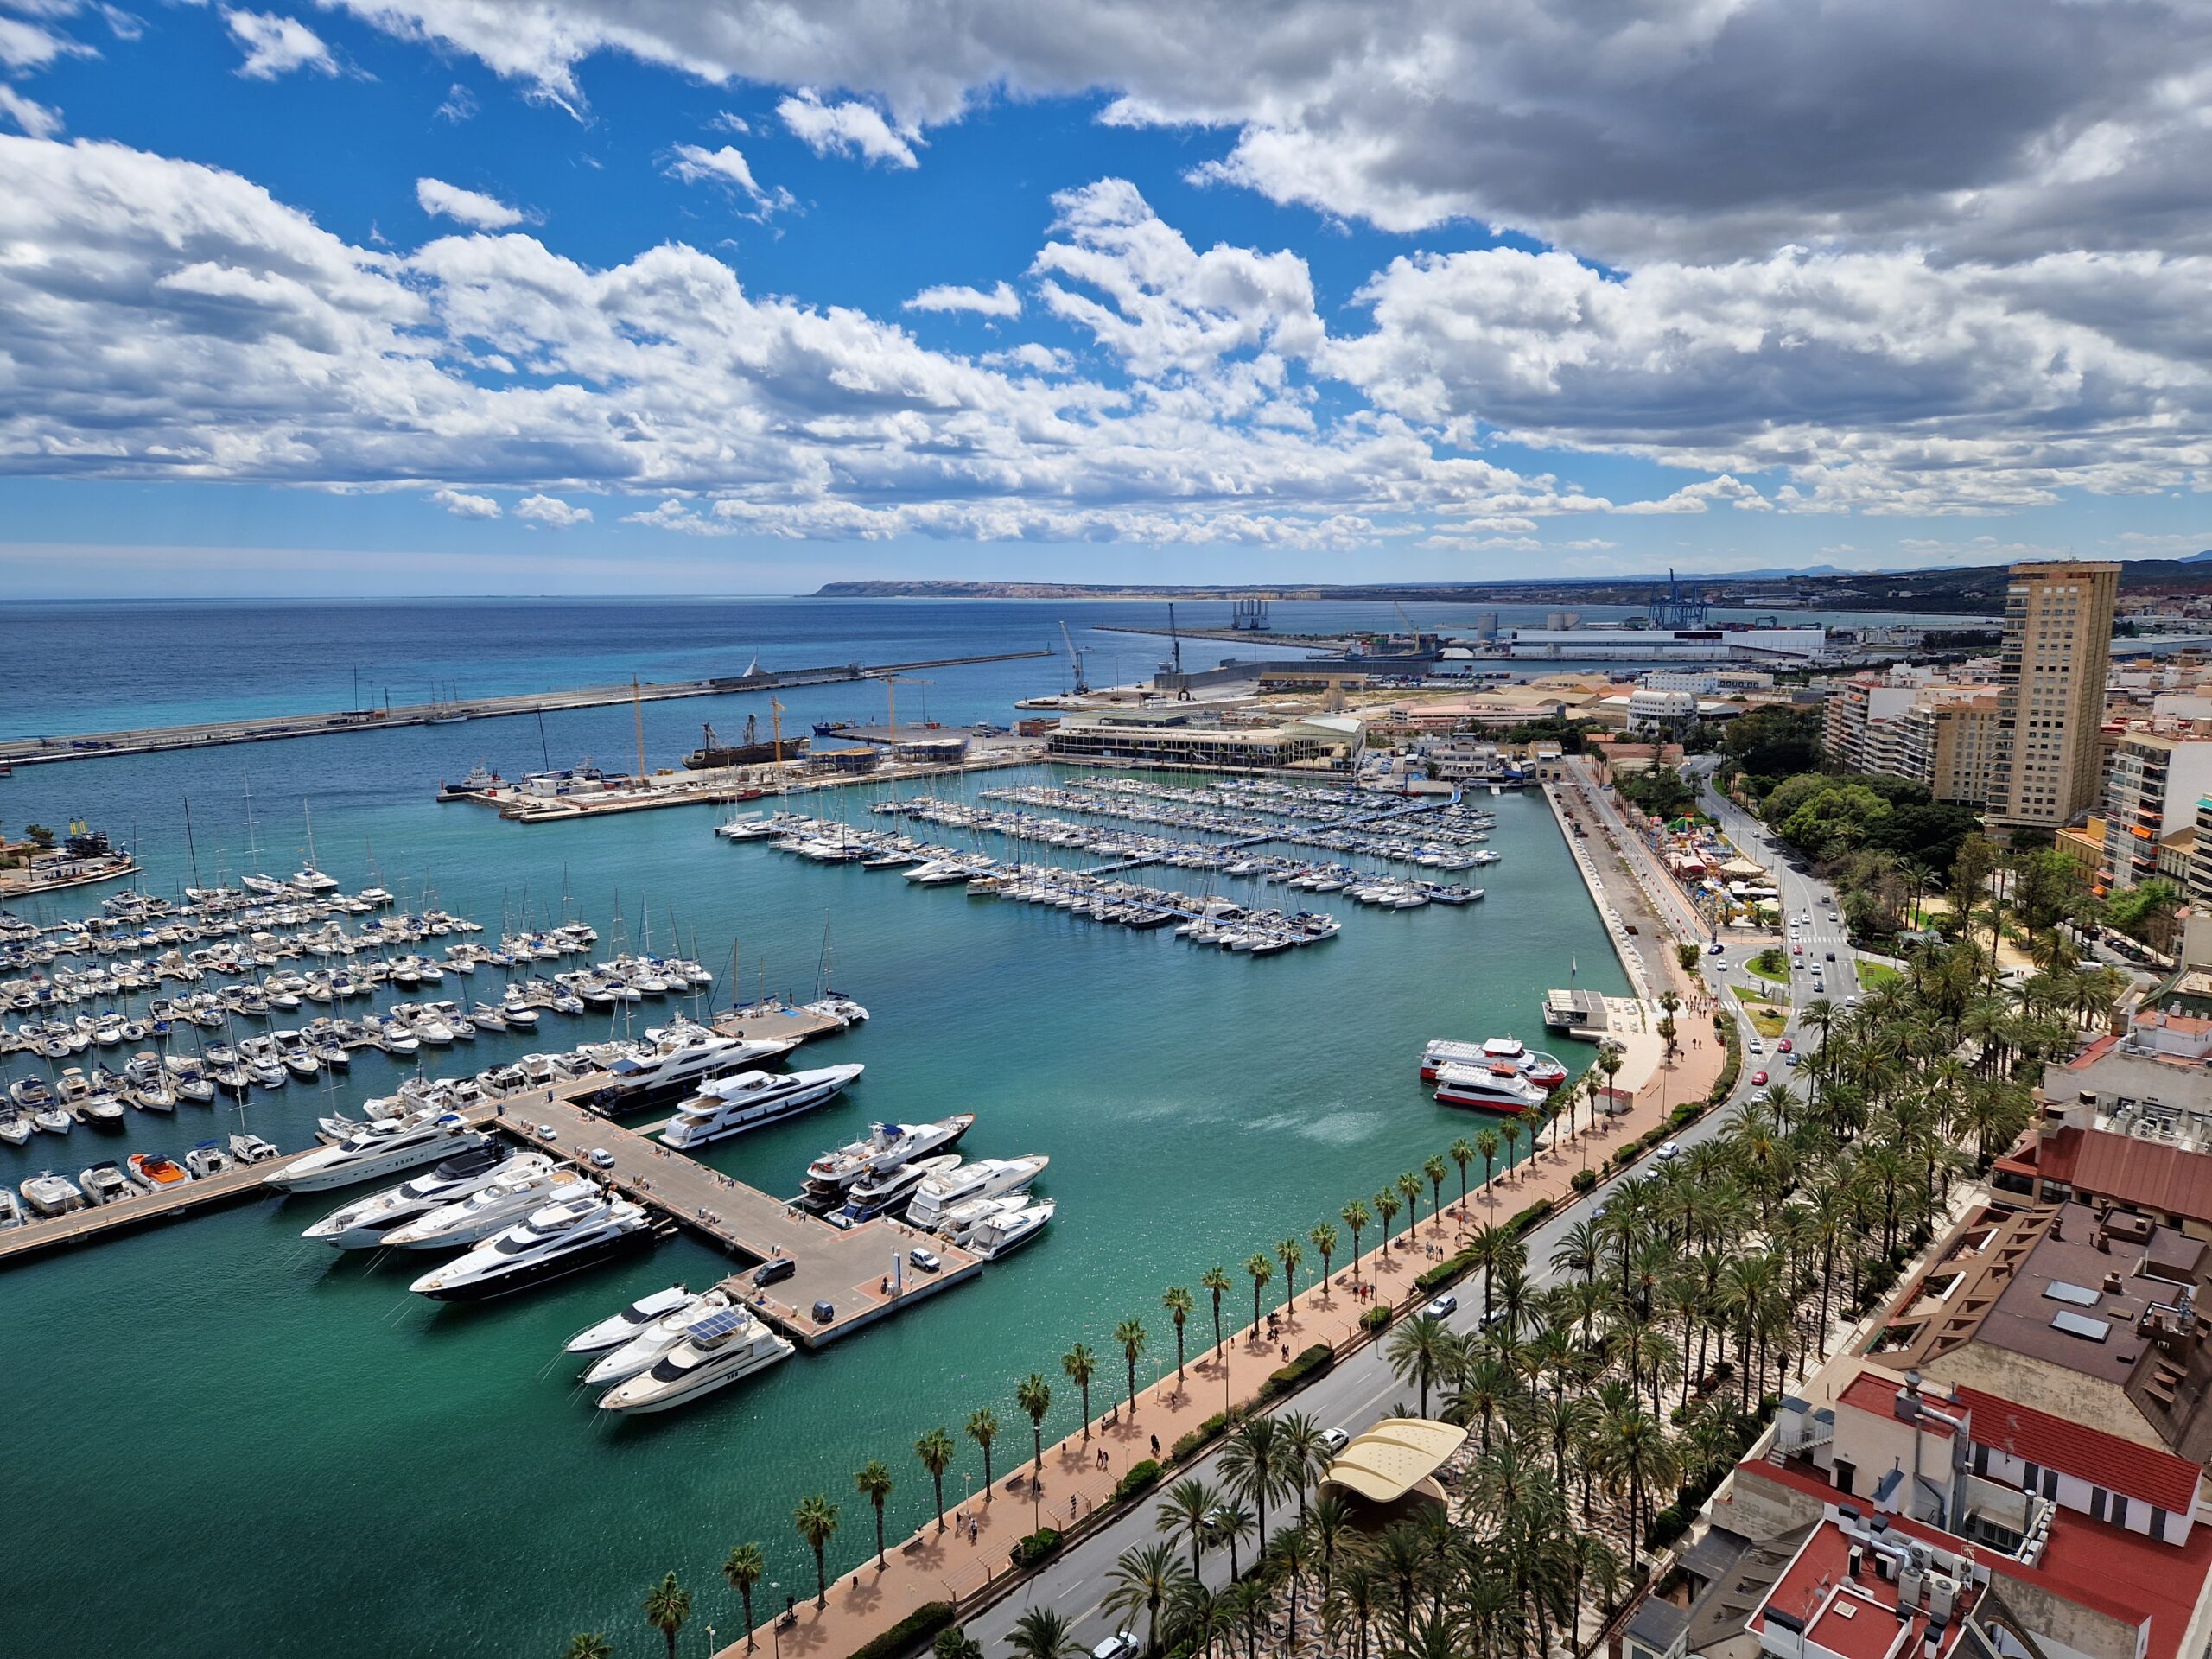 Hafen von Alicante vom Gran Sool Rooftop Resturant aus